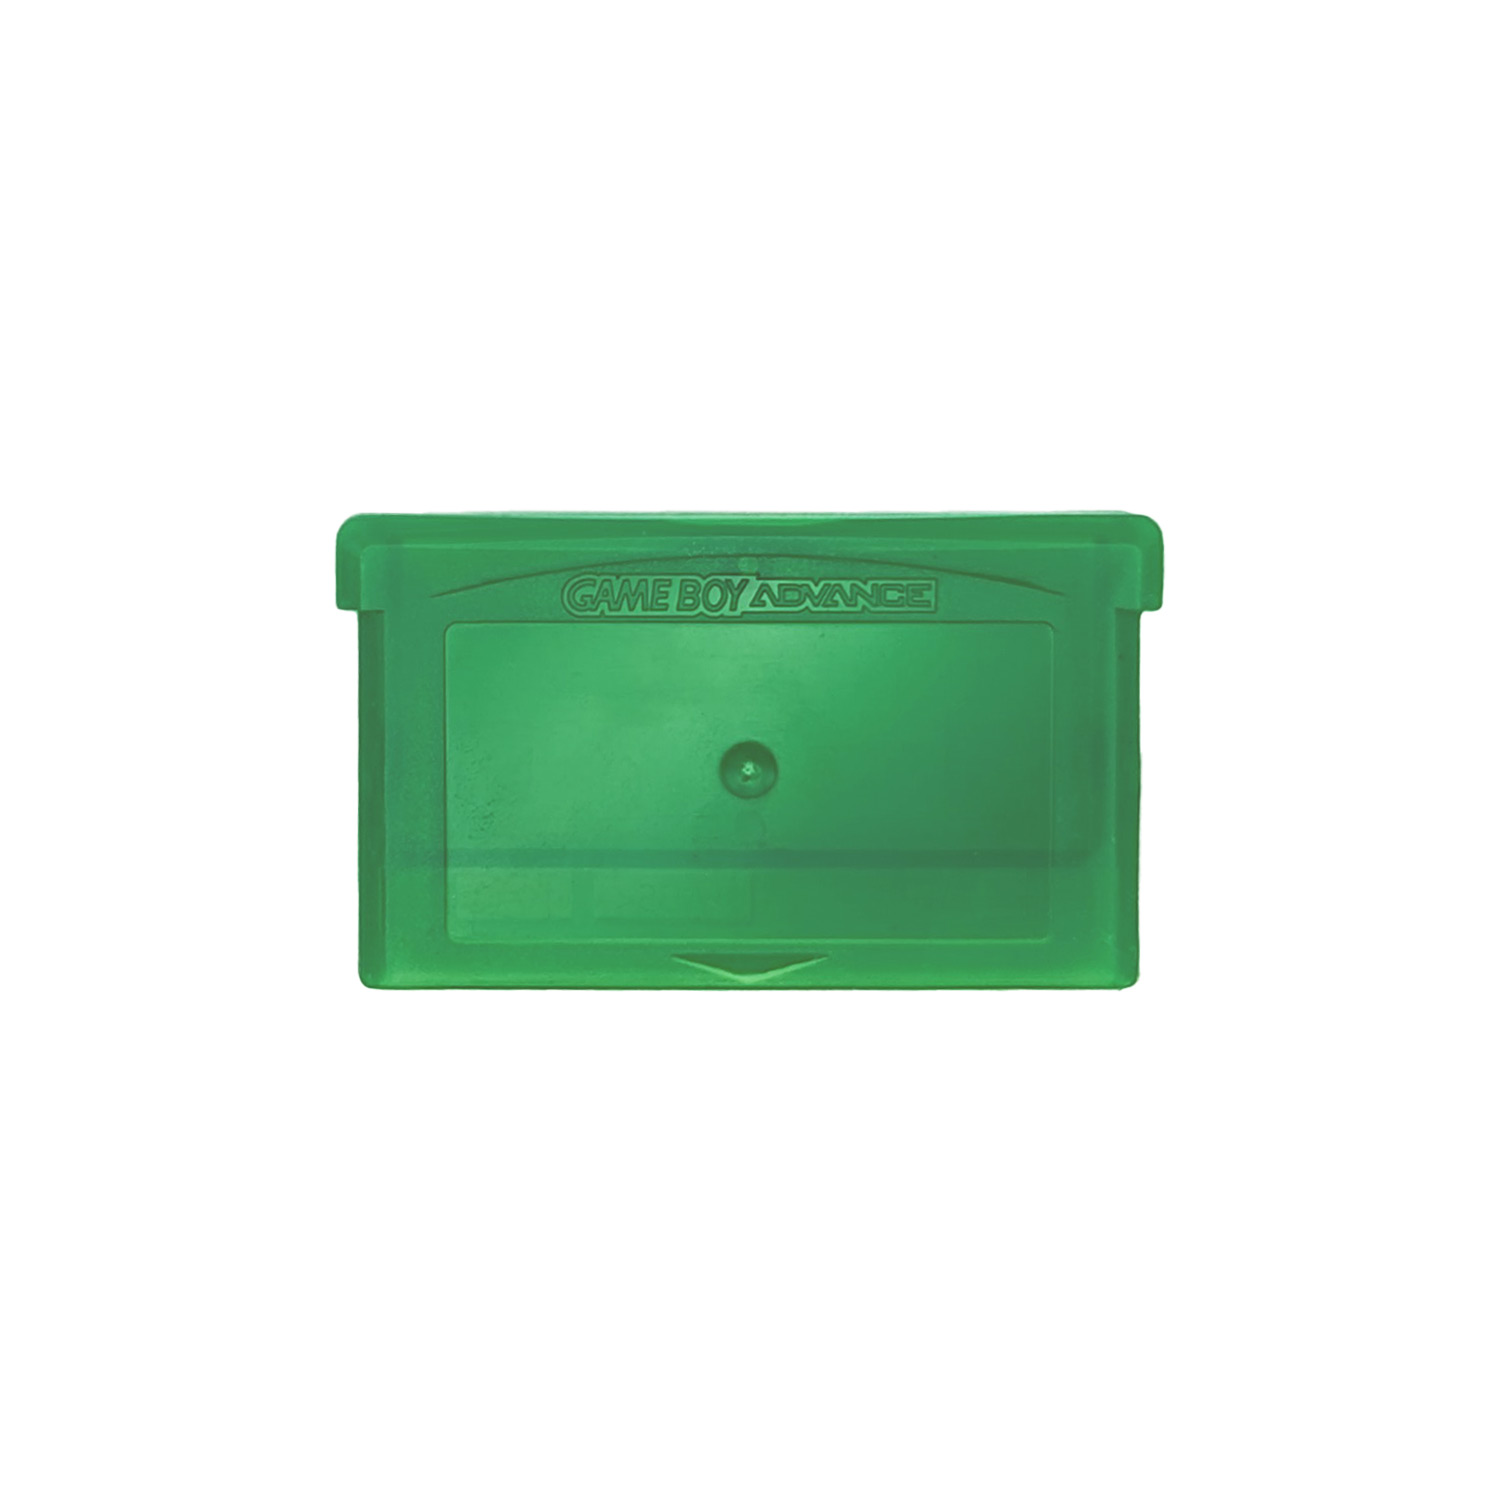 Game Boy Advance Moduletas (Groen mat)